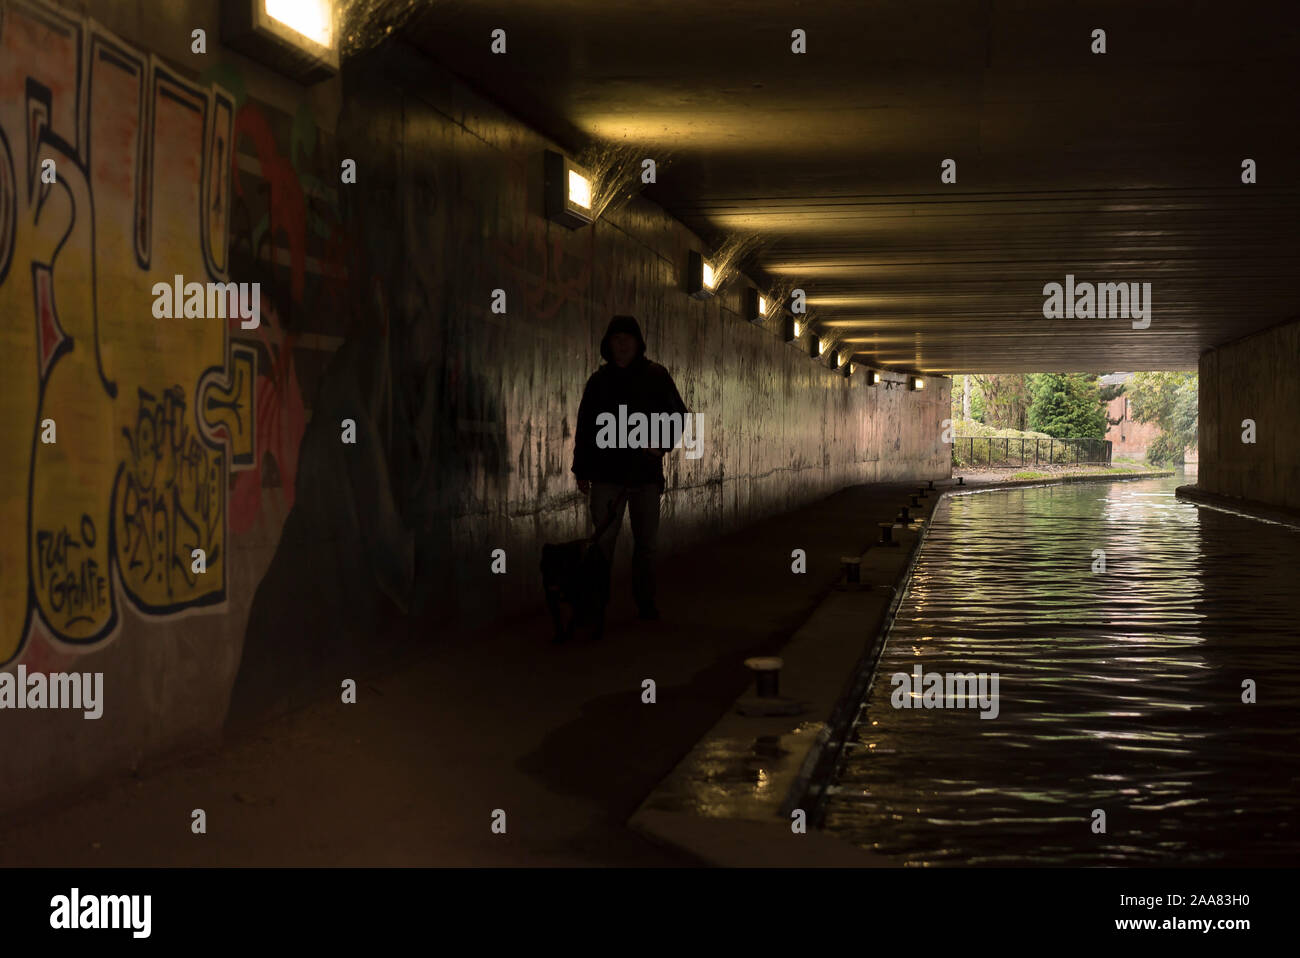 Un cas isolé, à capuchon, figure solitaire marcher par un canal urbain dans l'obscurité, UK passage inférieur pour piétons, passant d'art graffiti urbain vaporisés sur les murs Banque D'Images